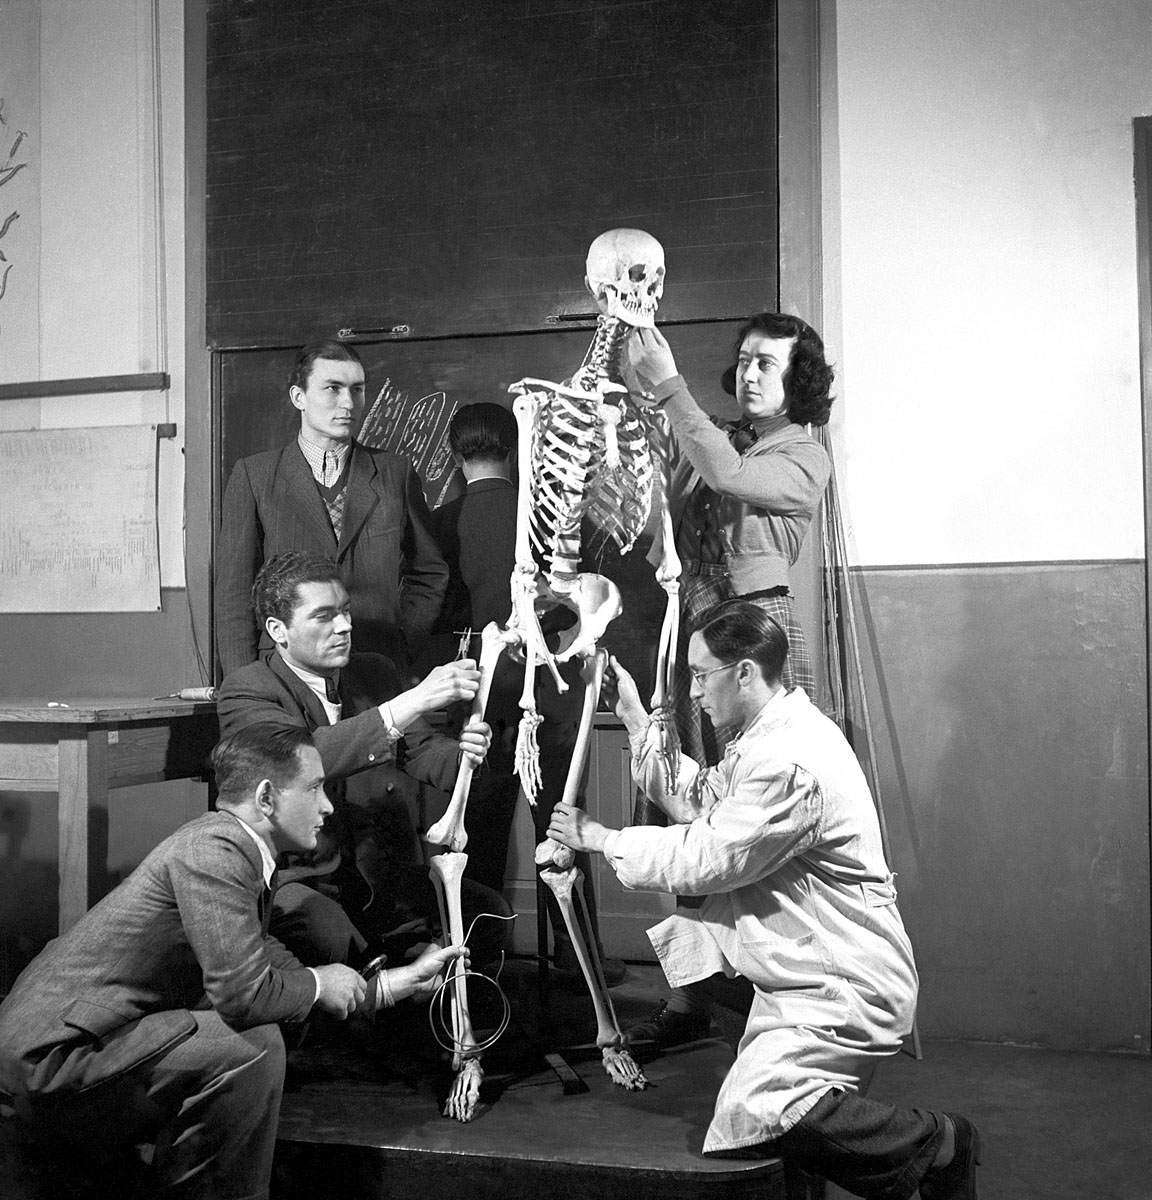 Professzor urak és diák elvtársak ajándéka 1952-ből – a pedagógiaifőiskola tanárai és tanulói az egyik csontvázzal, melyet Rákosi Mátyás hatvanadik születésnapjára tett vállalásuk keretében állítottak helyre